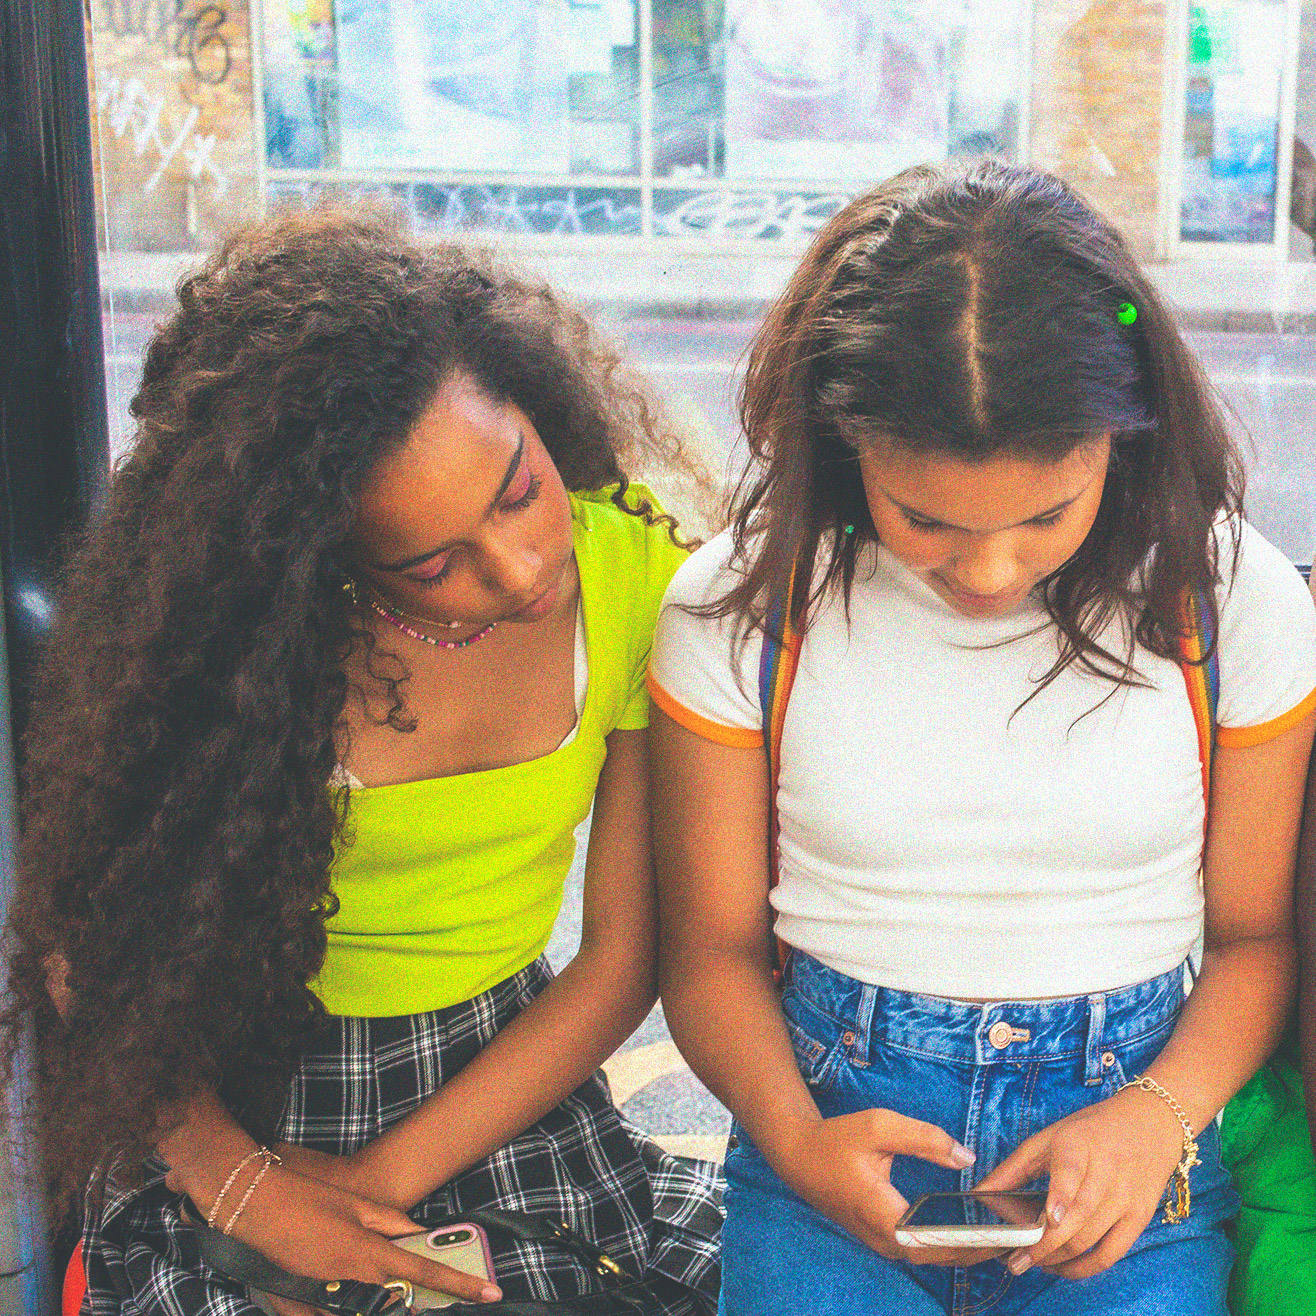 2 teen girls looking at phone at a bus stop